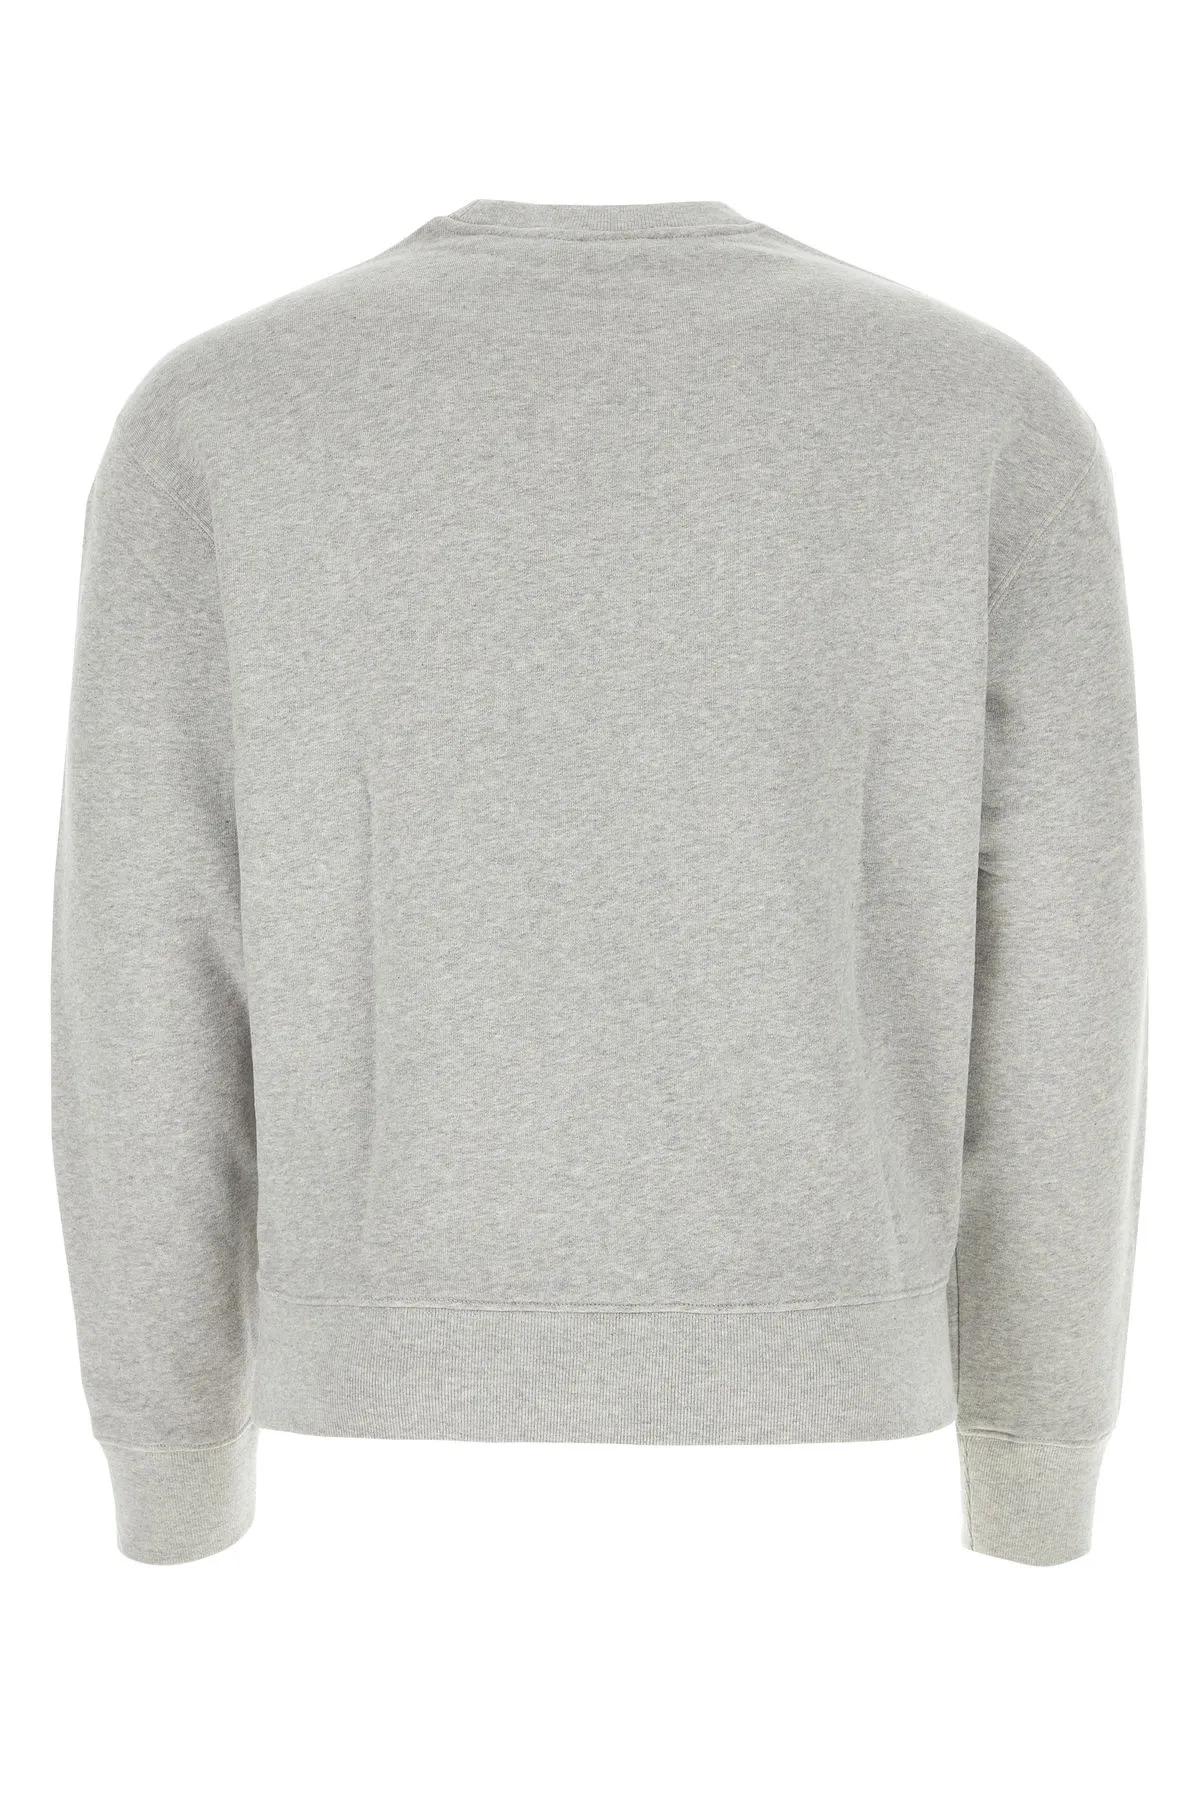 Shop Maison Kitsuné Melange Grey Cotton Sweatshirt